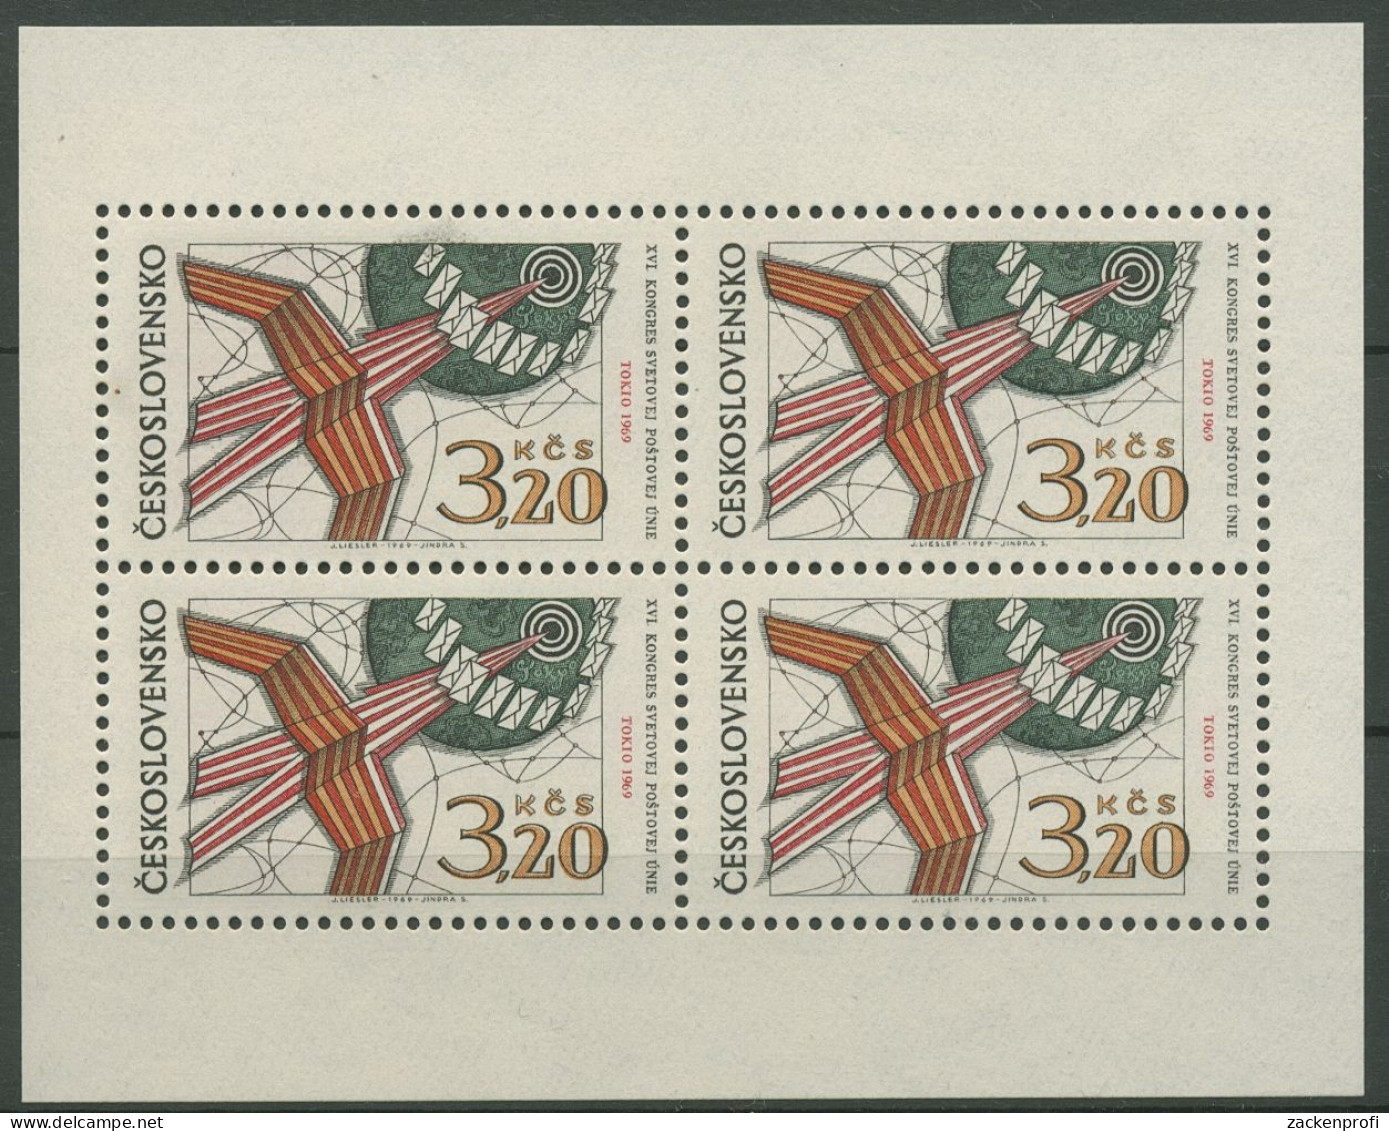 Tschechoslowakei 1969 Weltpostkongress Kleinbogen 1903 K Postfrisch (C91906) - Blocks & Kleinbögen